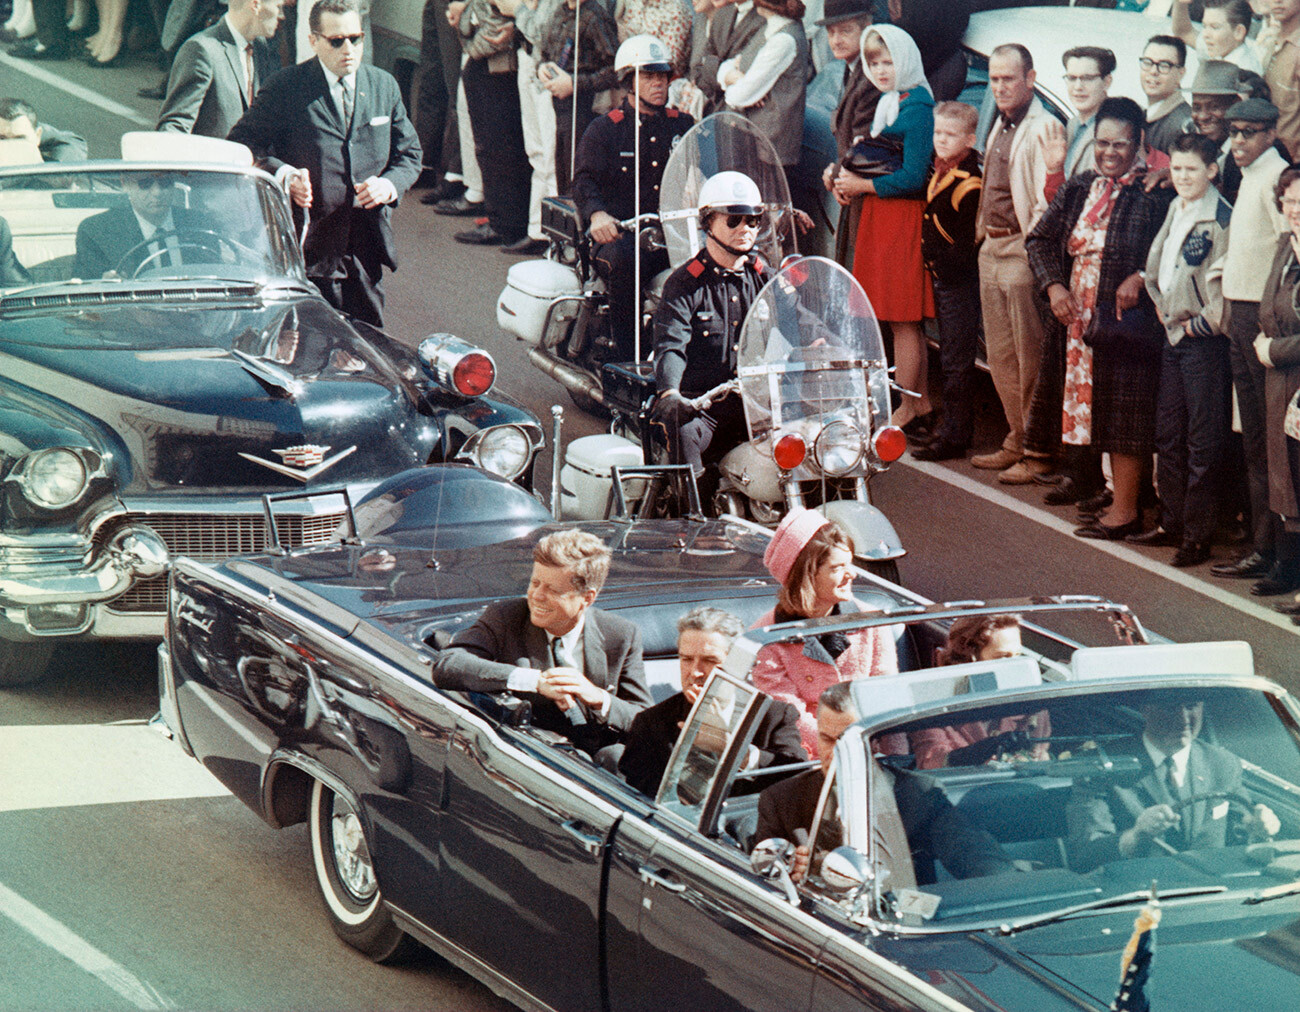  Президентът и госпожа Джон Ф. Кенеди се усмихват на тълпите, нареждащи се по пътя им в Далас, Тексас, на 22 ноември 1963 година Минути по-късно президентът е погубен, до момента в който колата му минава през Dealey Plaza 